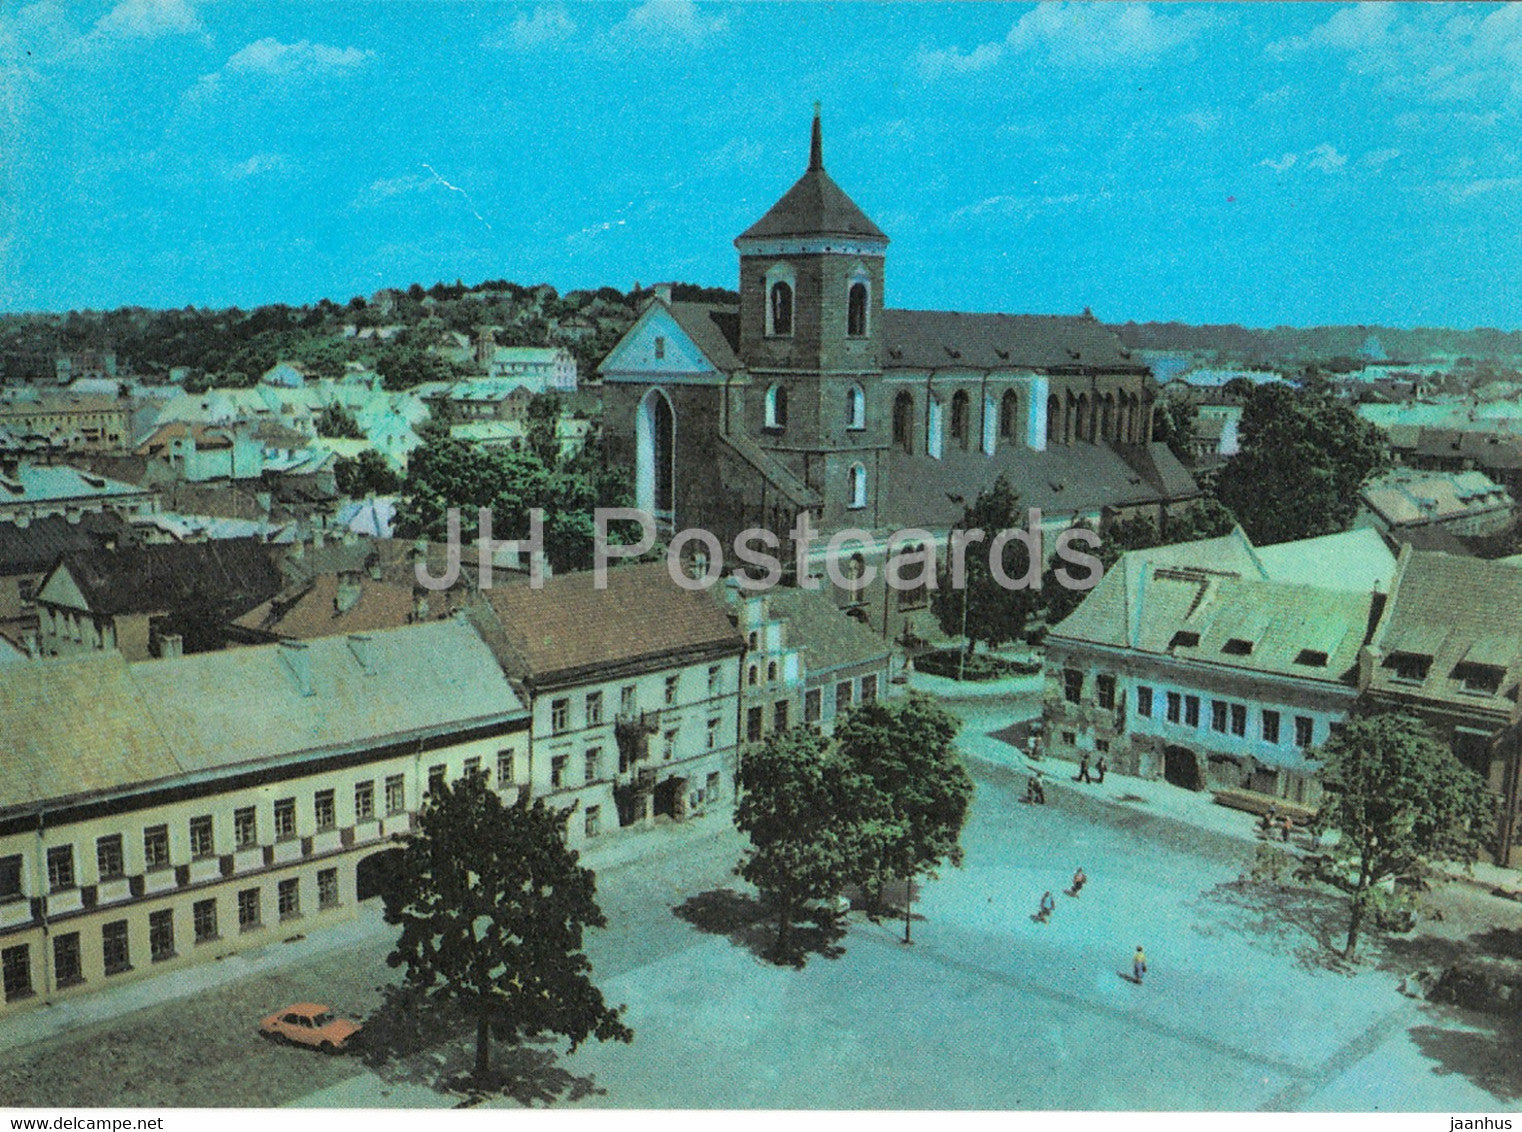 Kaunas - Rotuses (Town Hall) square - 1982 - Lithuania USSR - unused - JH Postcards